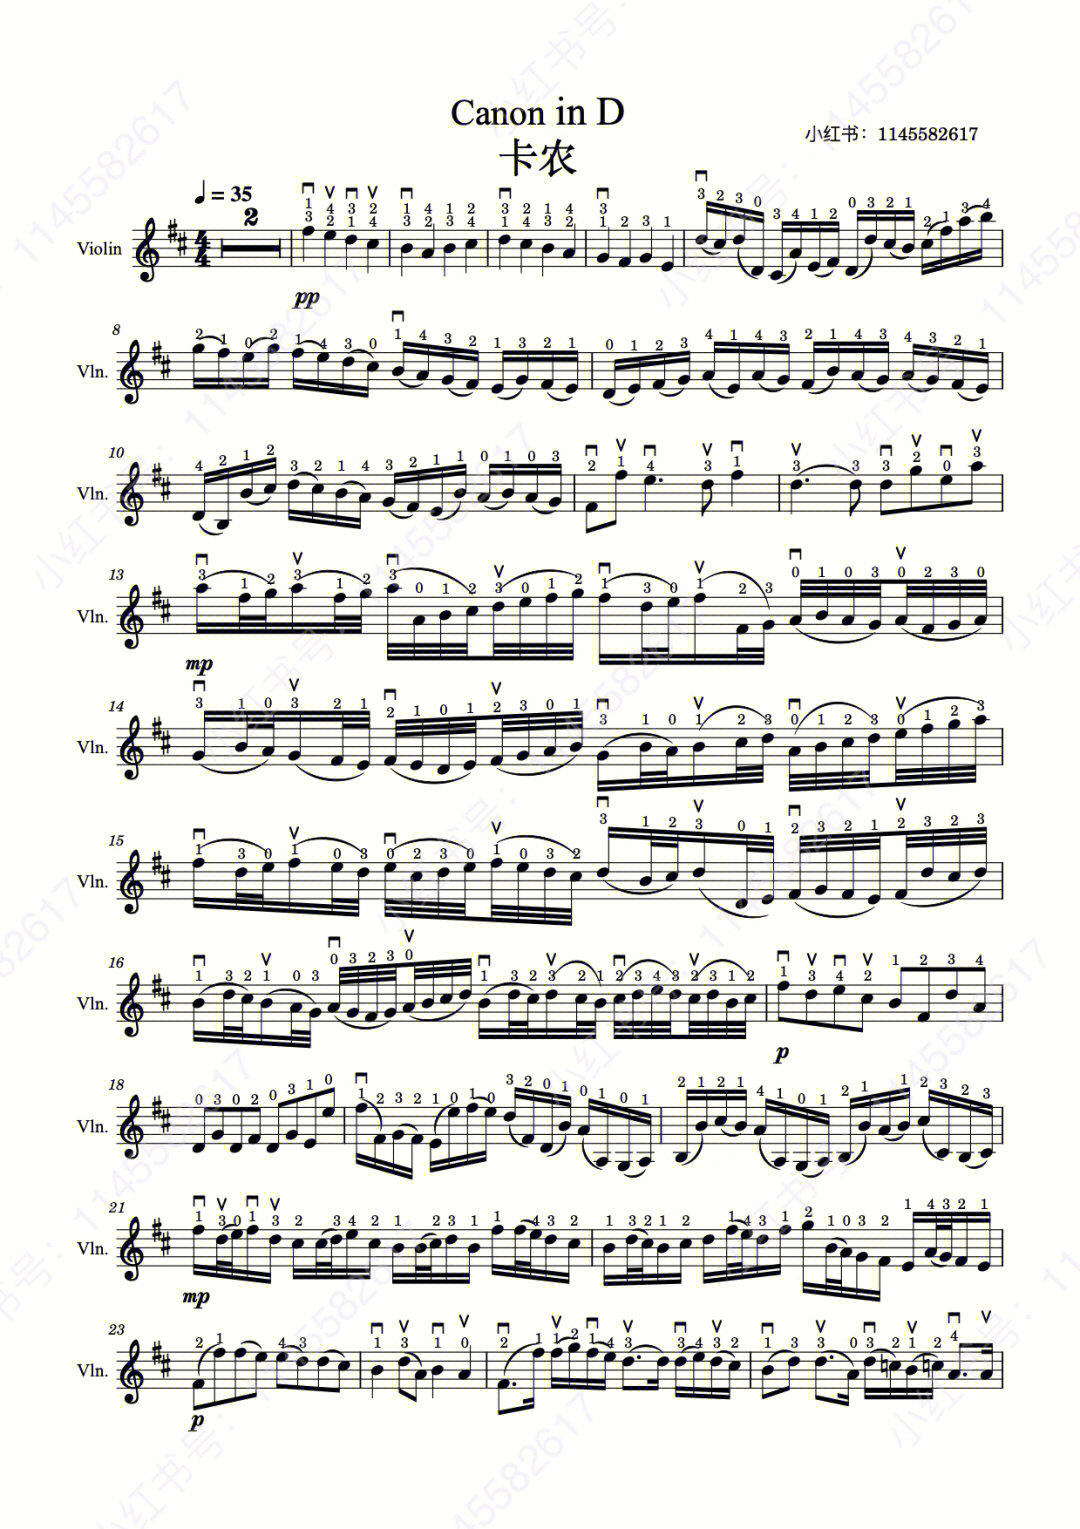 卡农小提琴谱弓法77指法不同版本